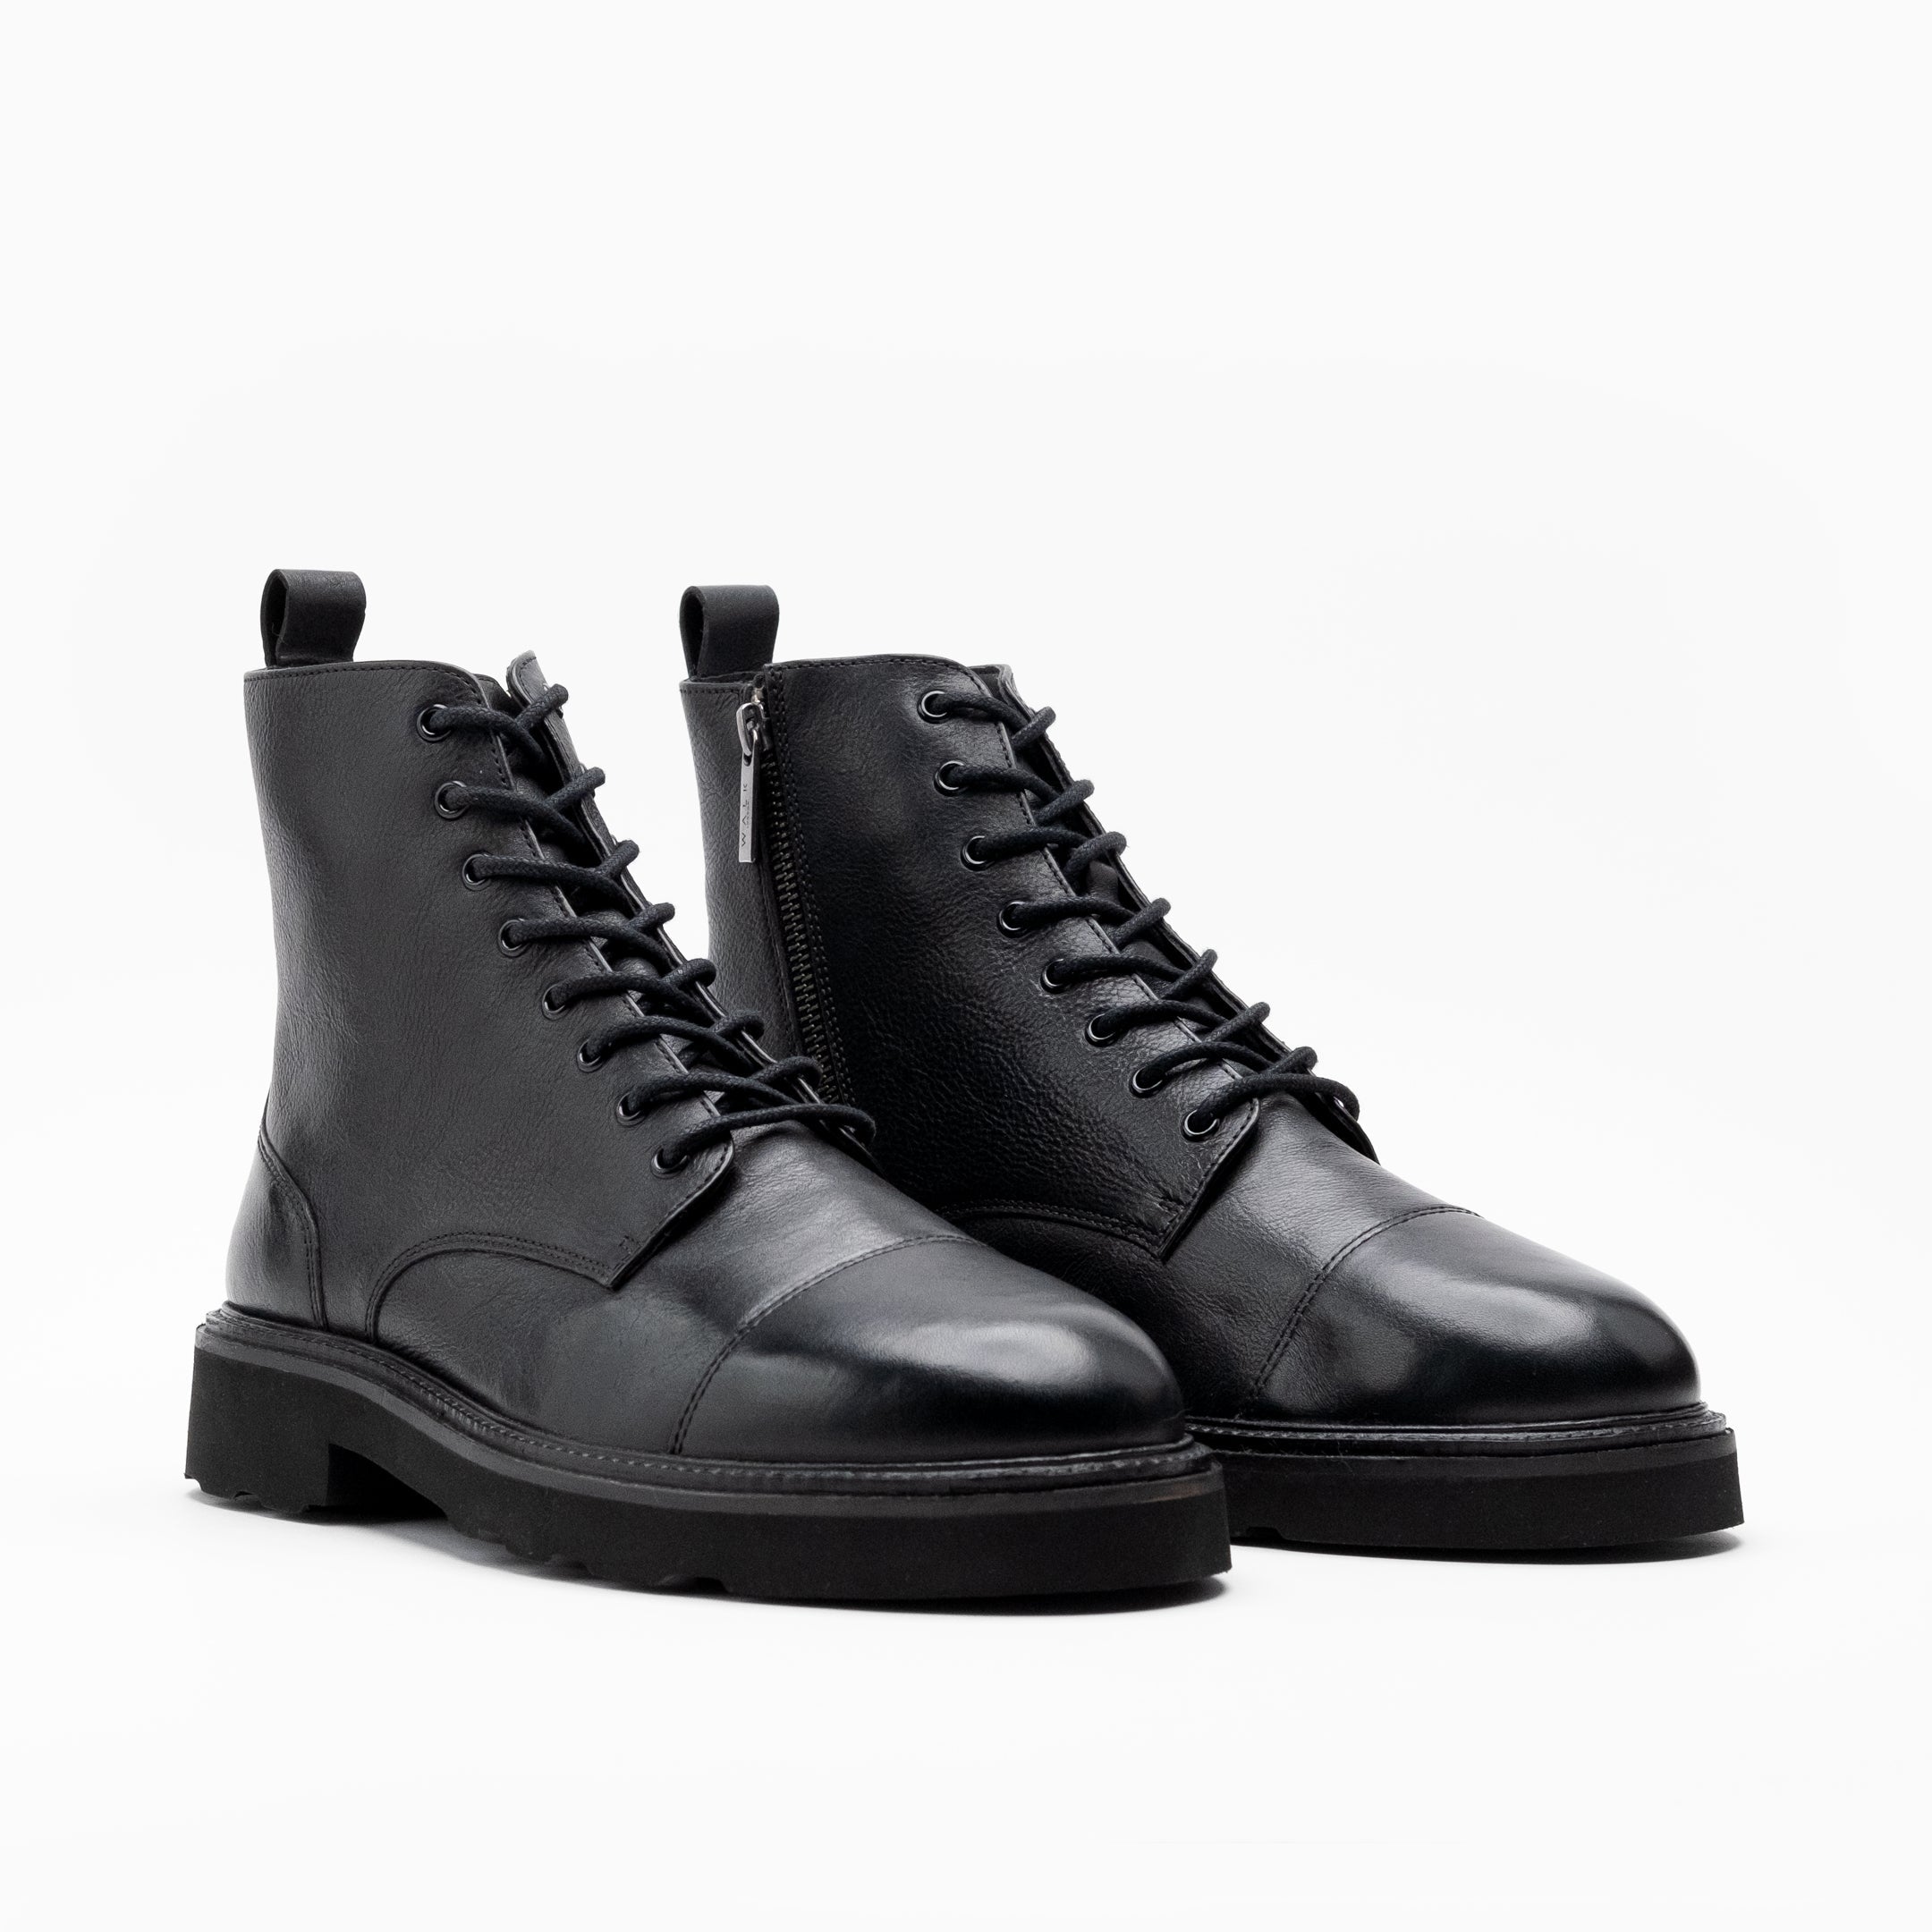 Men's Lace Up Boots | Walk London | Official Site